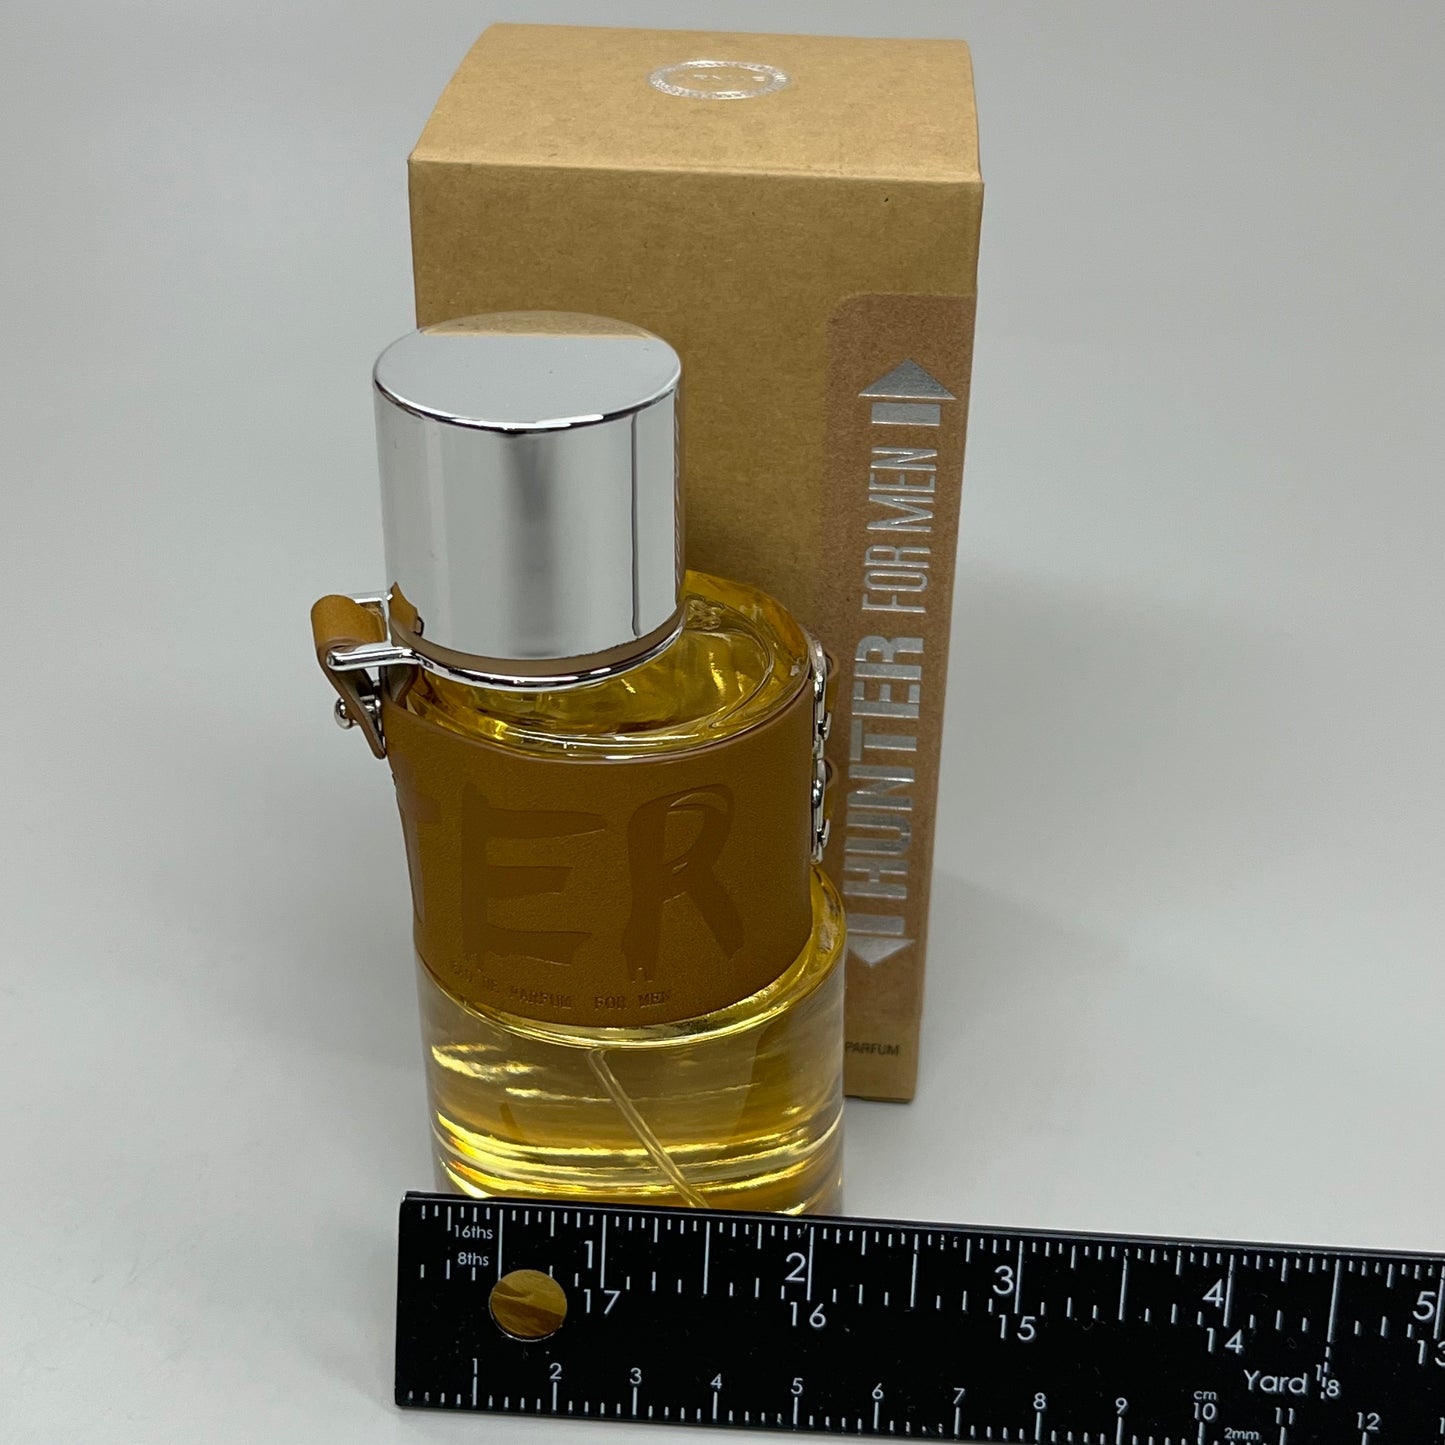 ARMAF Sterling Parfums Hunter Natural Spray for Men 3.4 oz / 100ml (New)